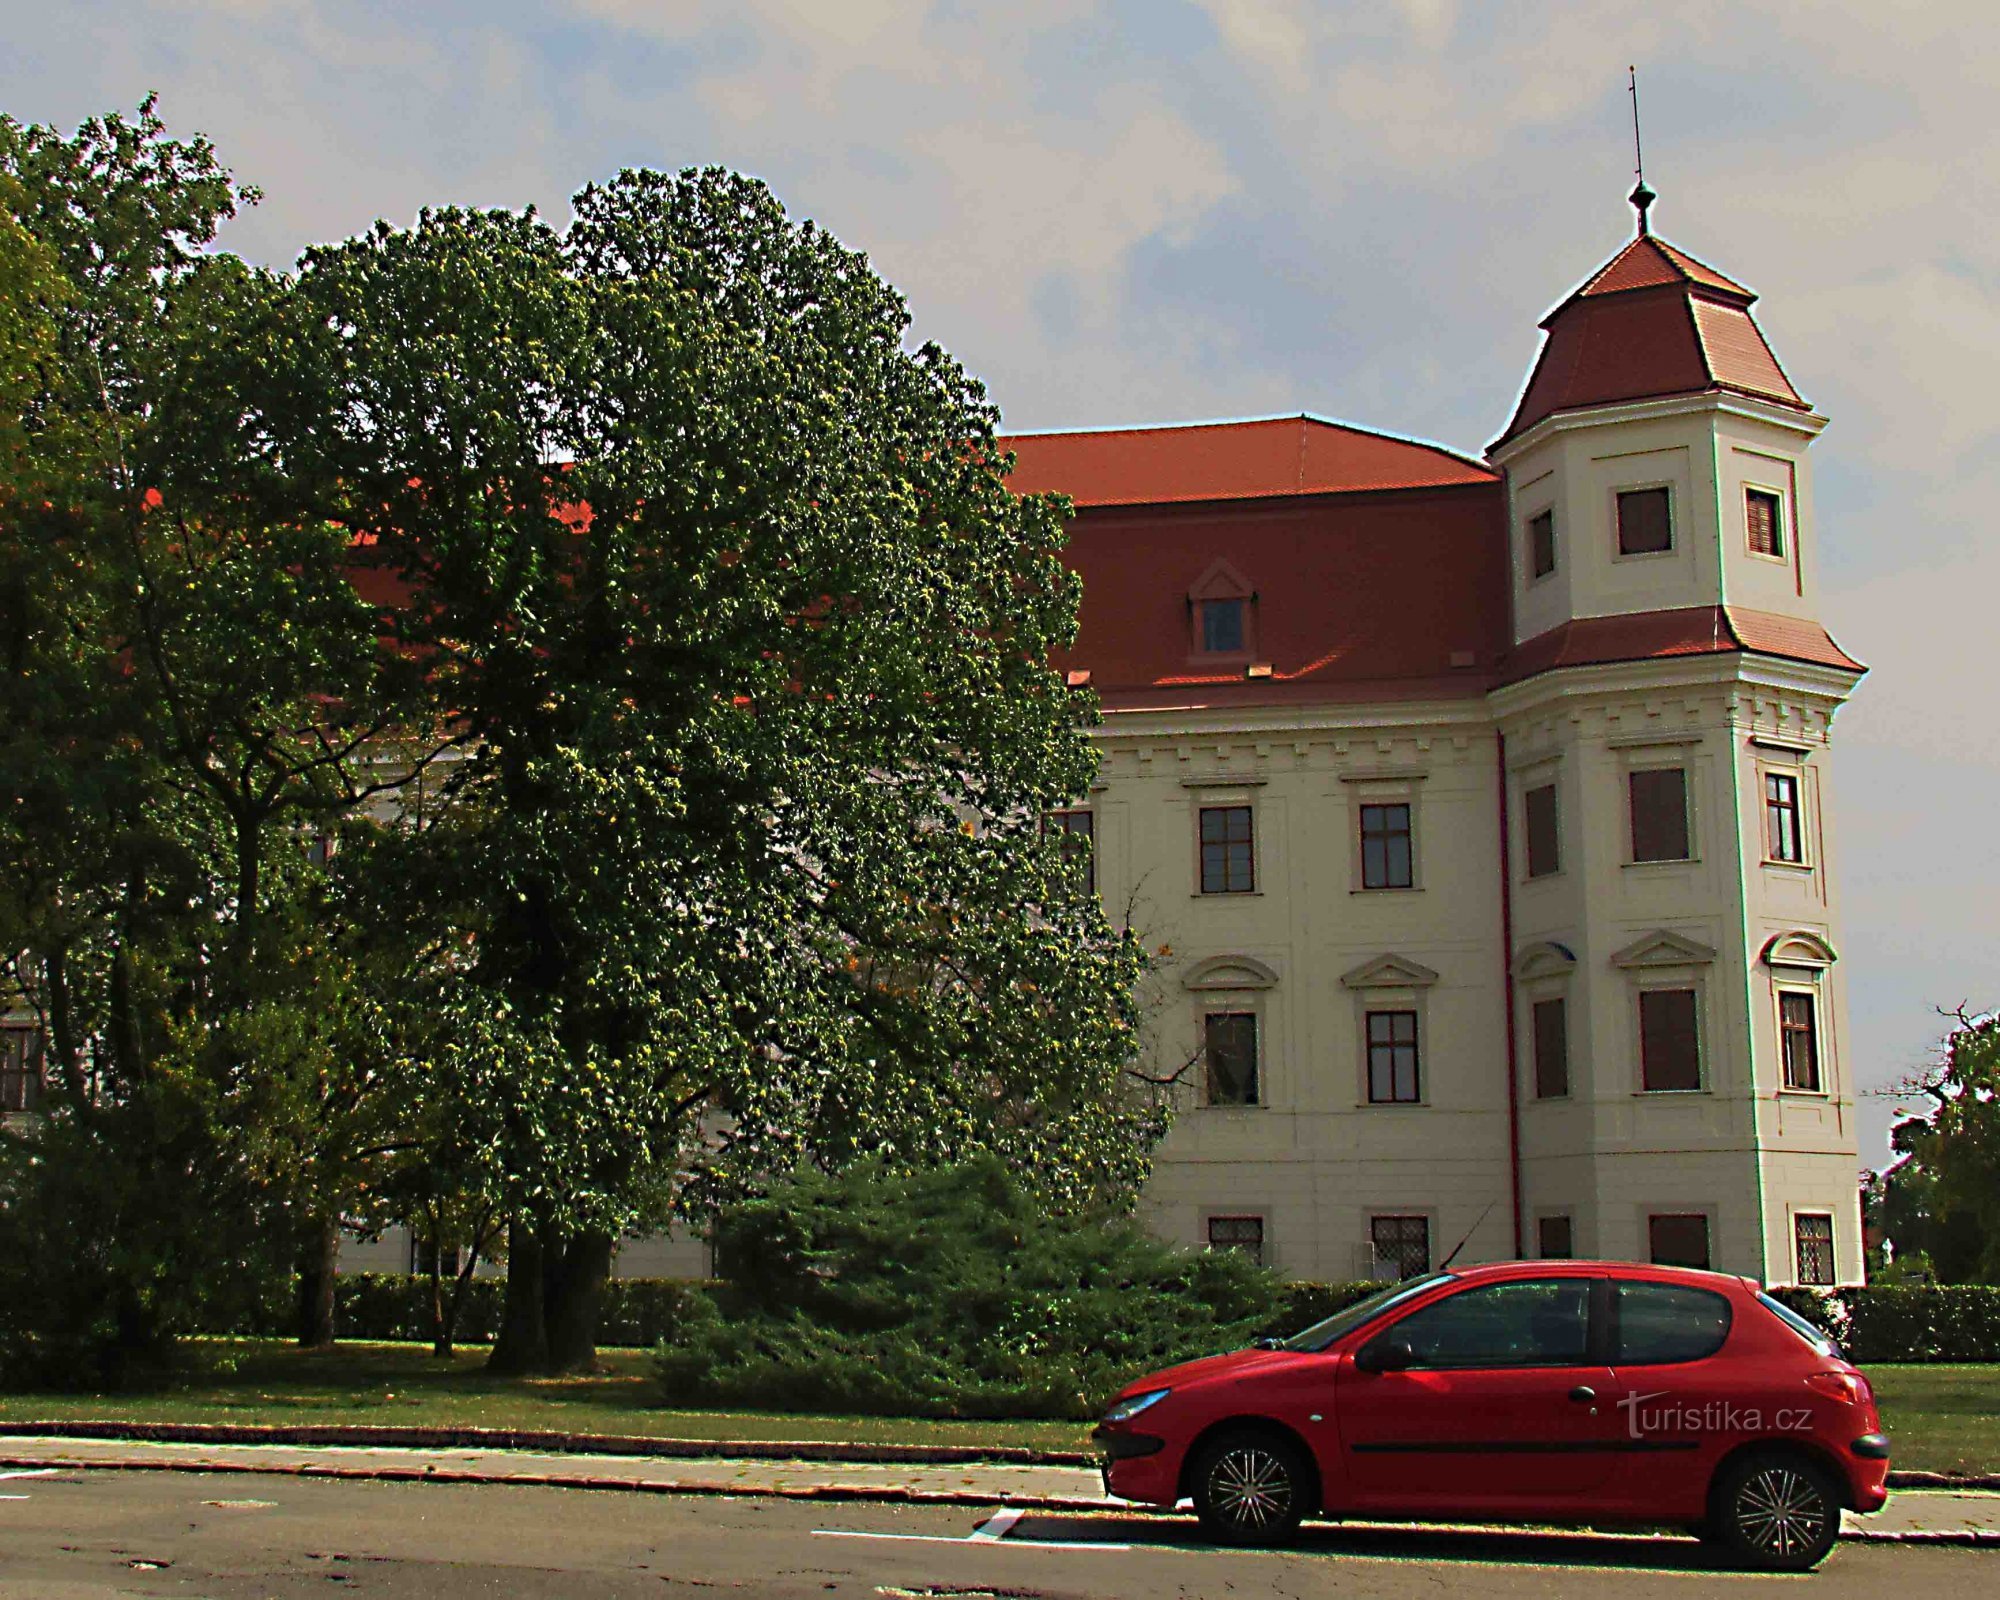 生态中心 - Hájenka Skřítek 在 Holešov 城堡公园